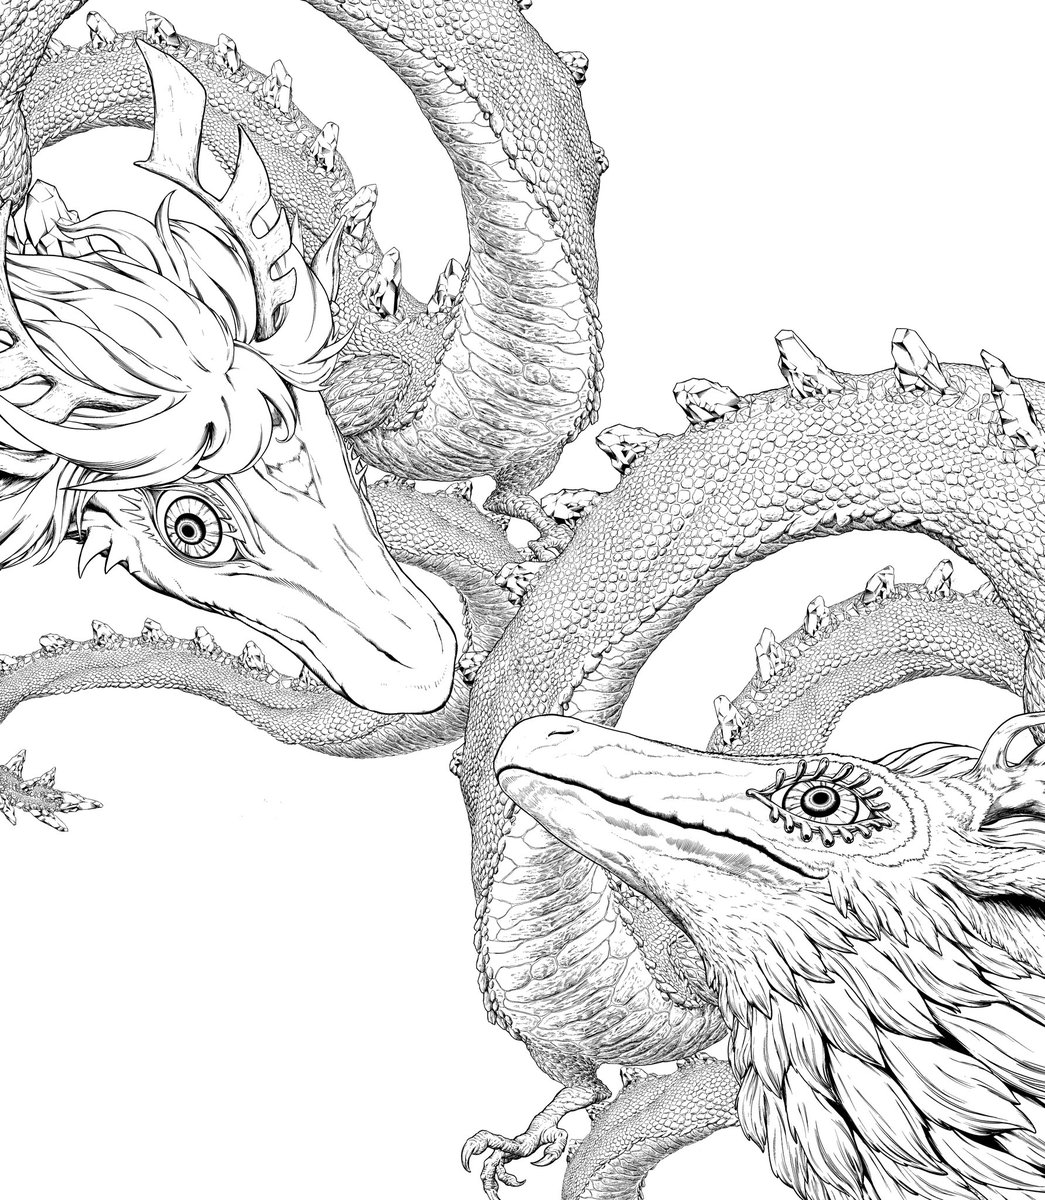 Liiiiinework of some Hylian dragons 
#LegendofZelda #TearsOfTheKingdom #Zelda #ティアキン #Zelink